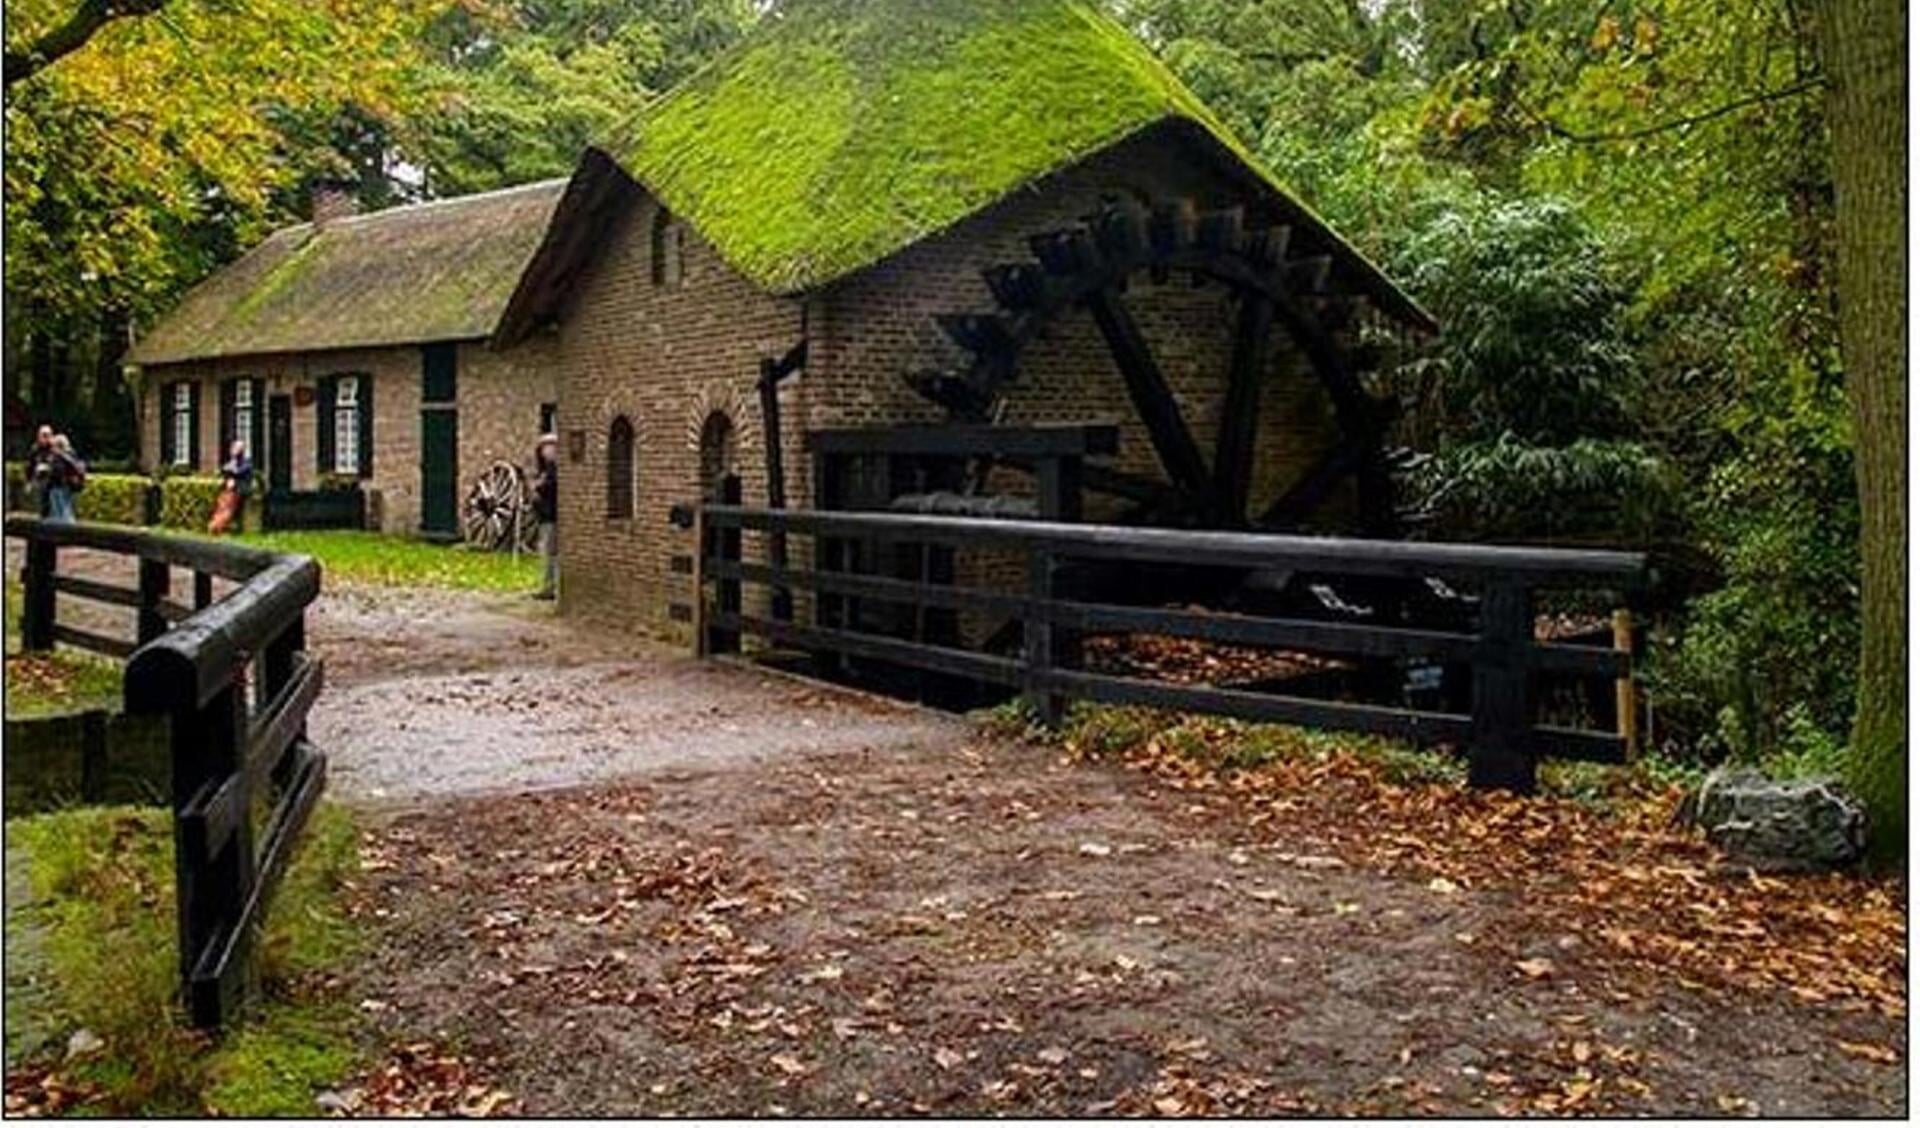 De Rosmolen is een van de bekendste plekken op Landgoed Geijsteren. Foto: IVN